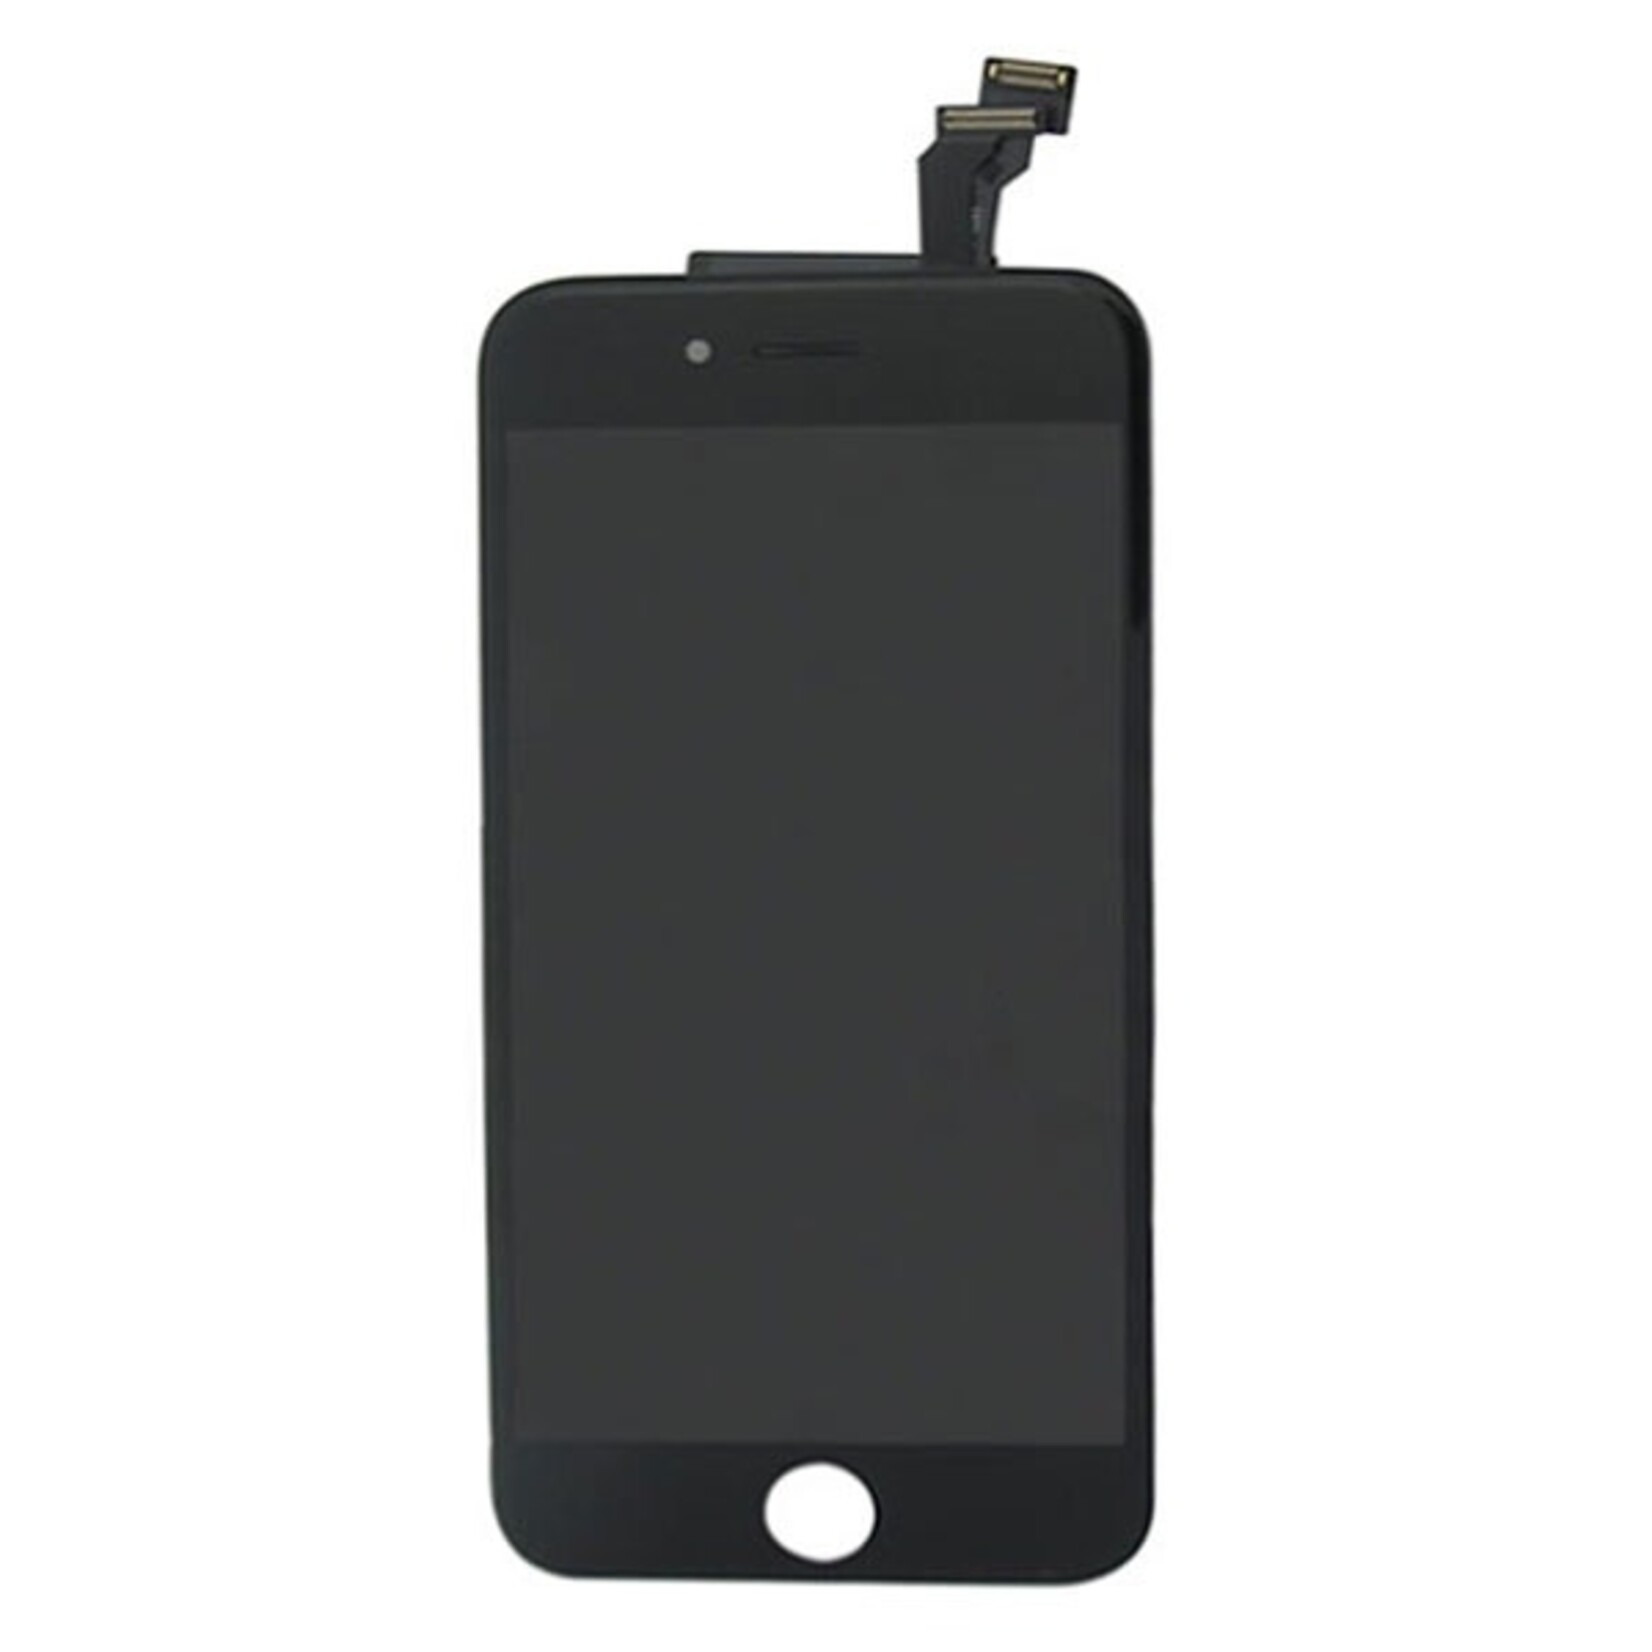 Apple USAGÉ / USED LCD DIGITIZER ASSEMBLY POUR IPHONE 6 NOIR BLACK